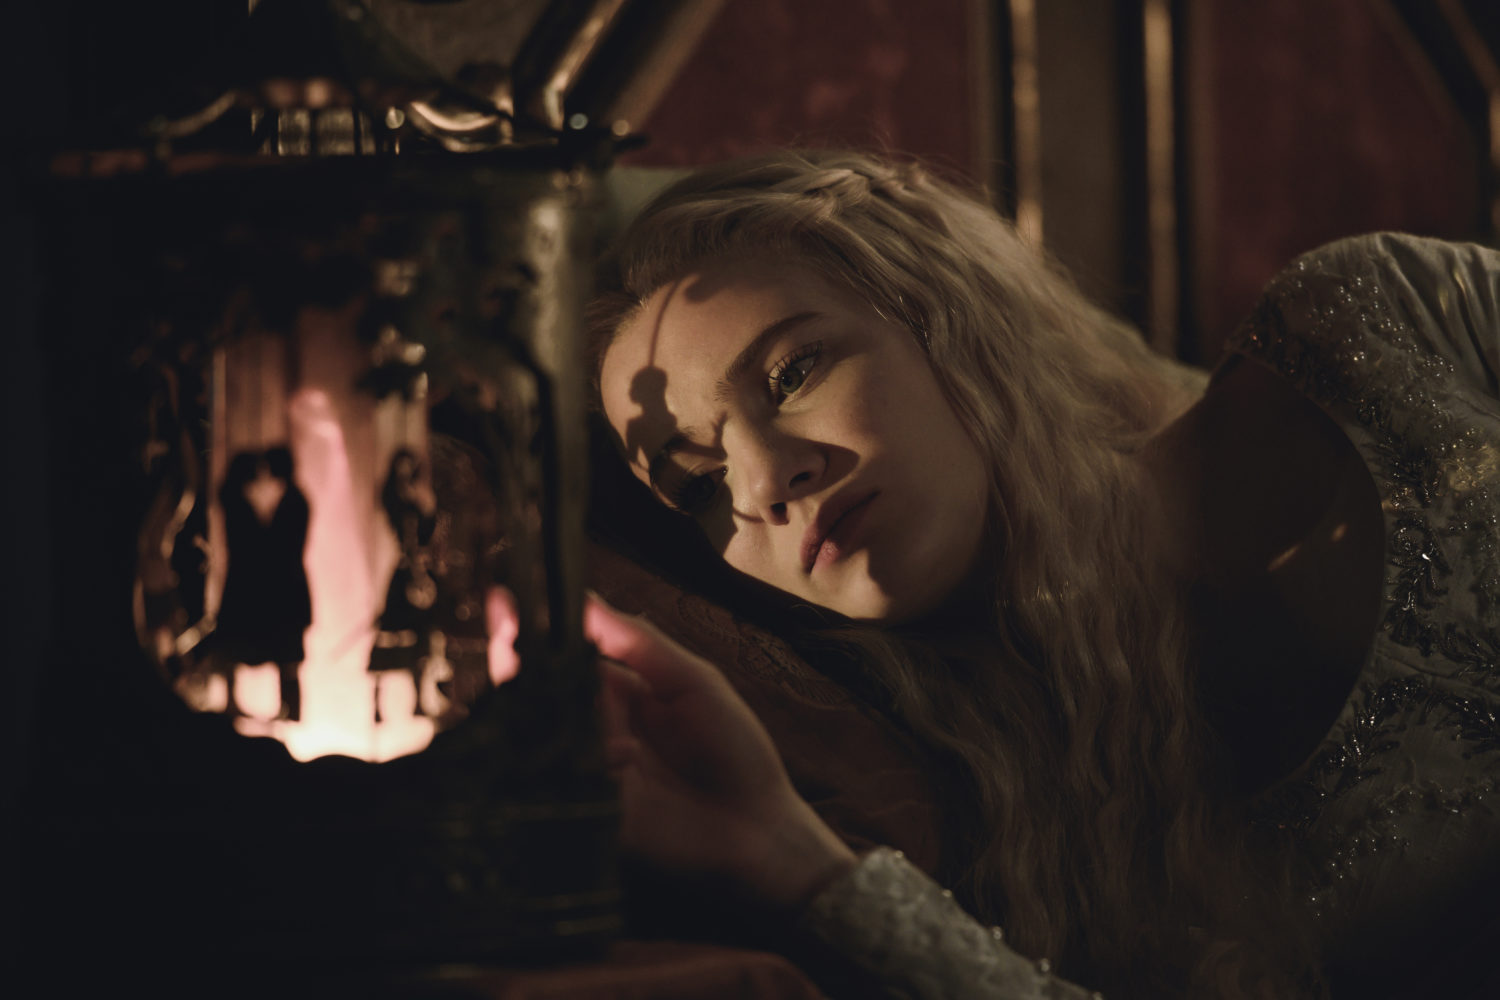 Ciri de Cintra (Freya Allan) em The Witcher